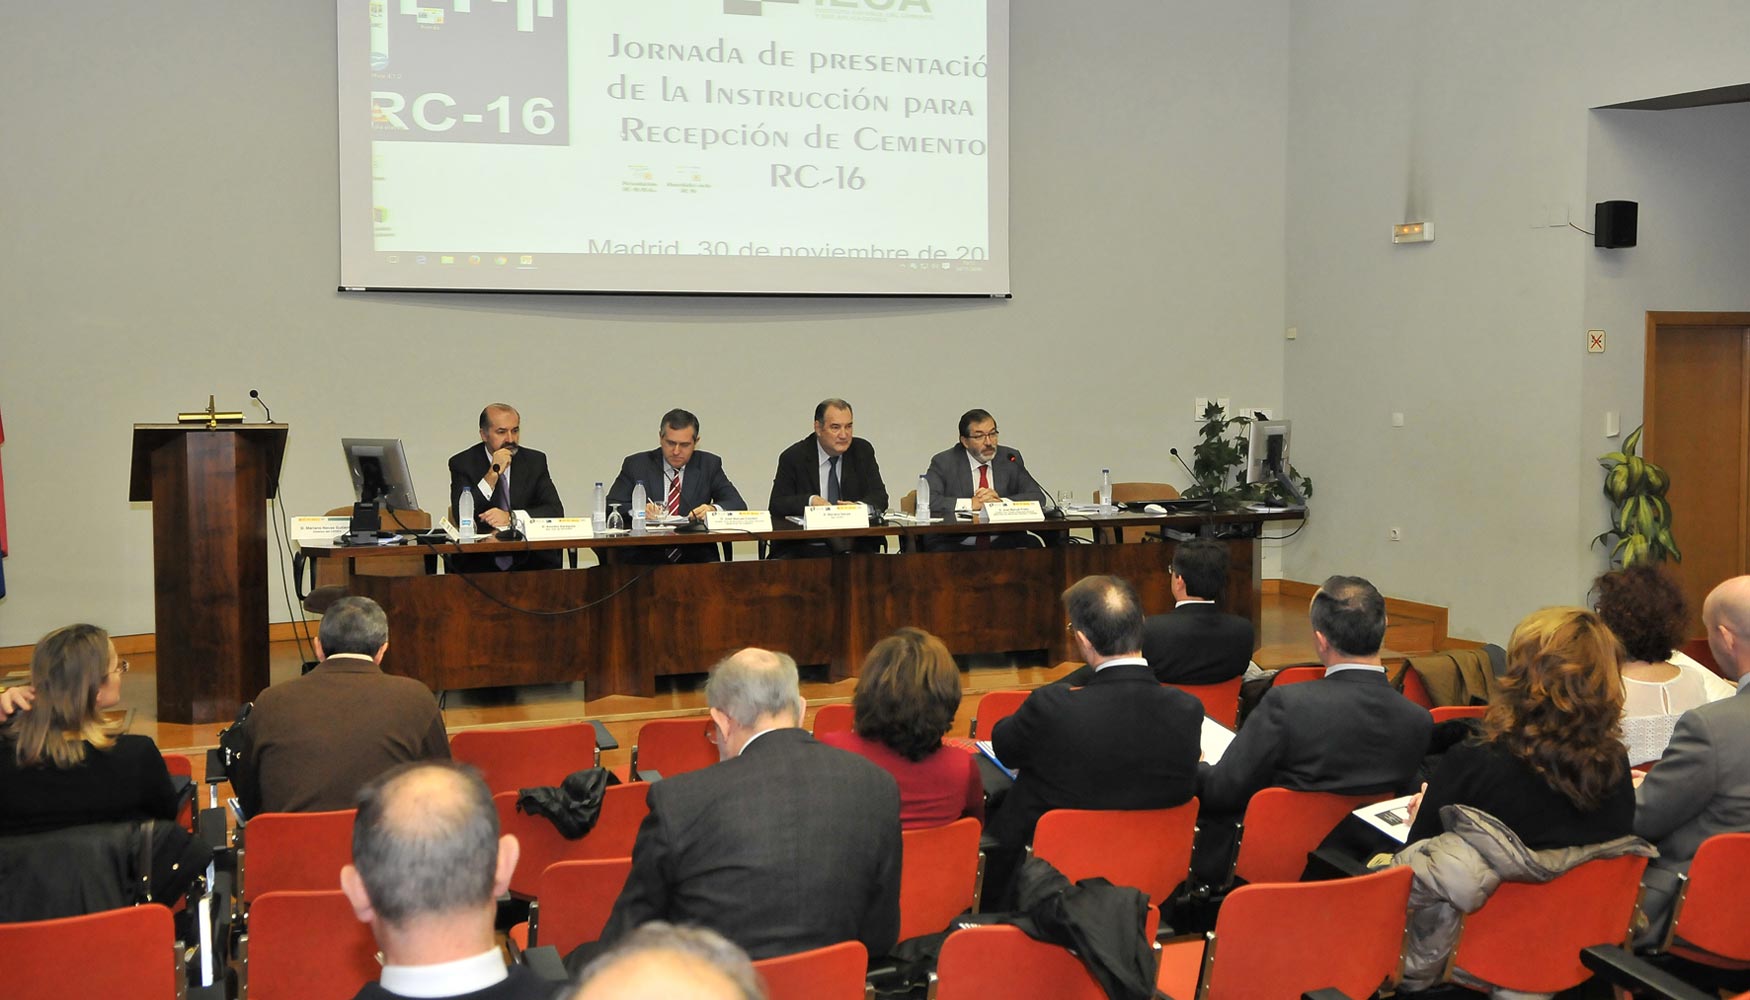 Presentacin en Madrid de la nueva Instruccin para la recepcin de cementos, RC-16